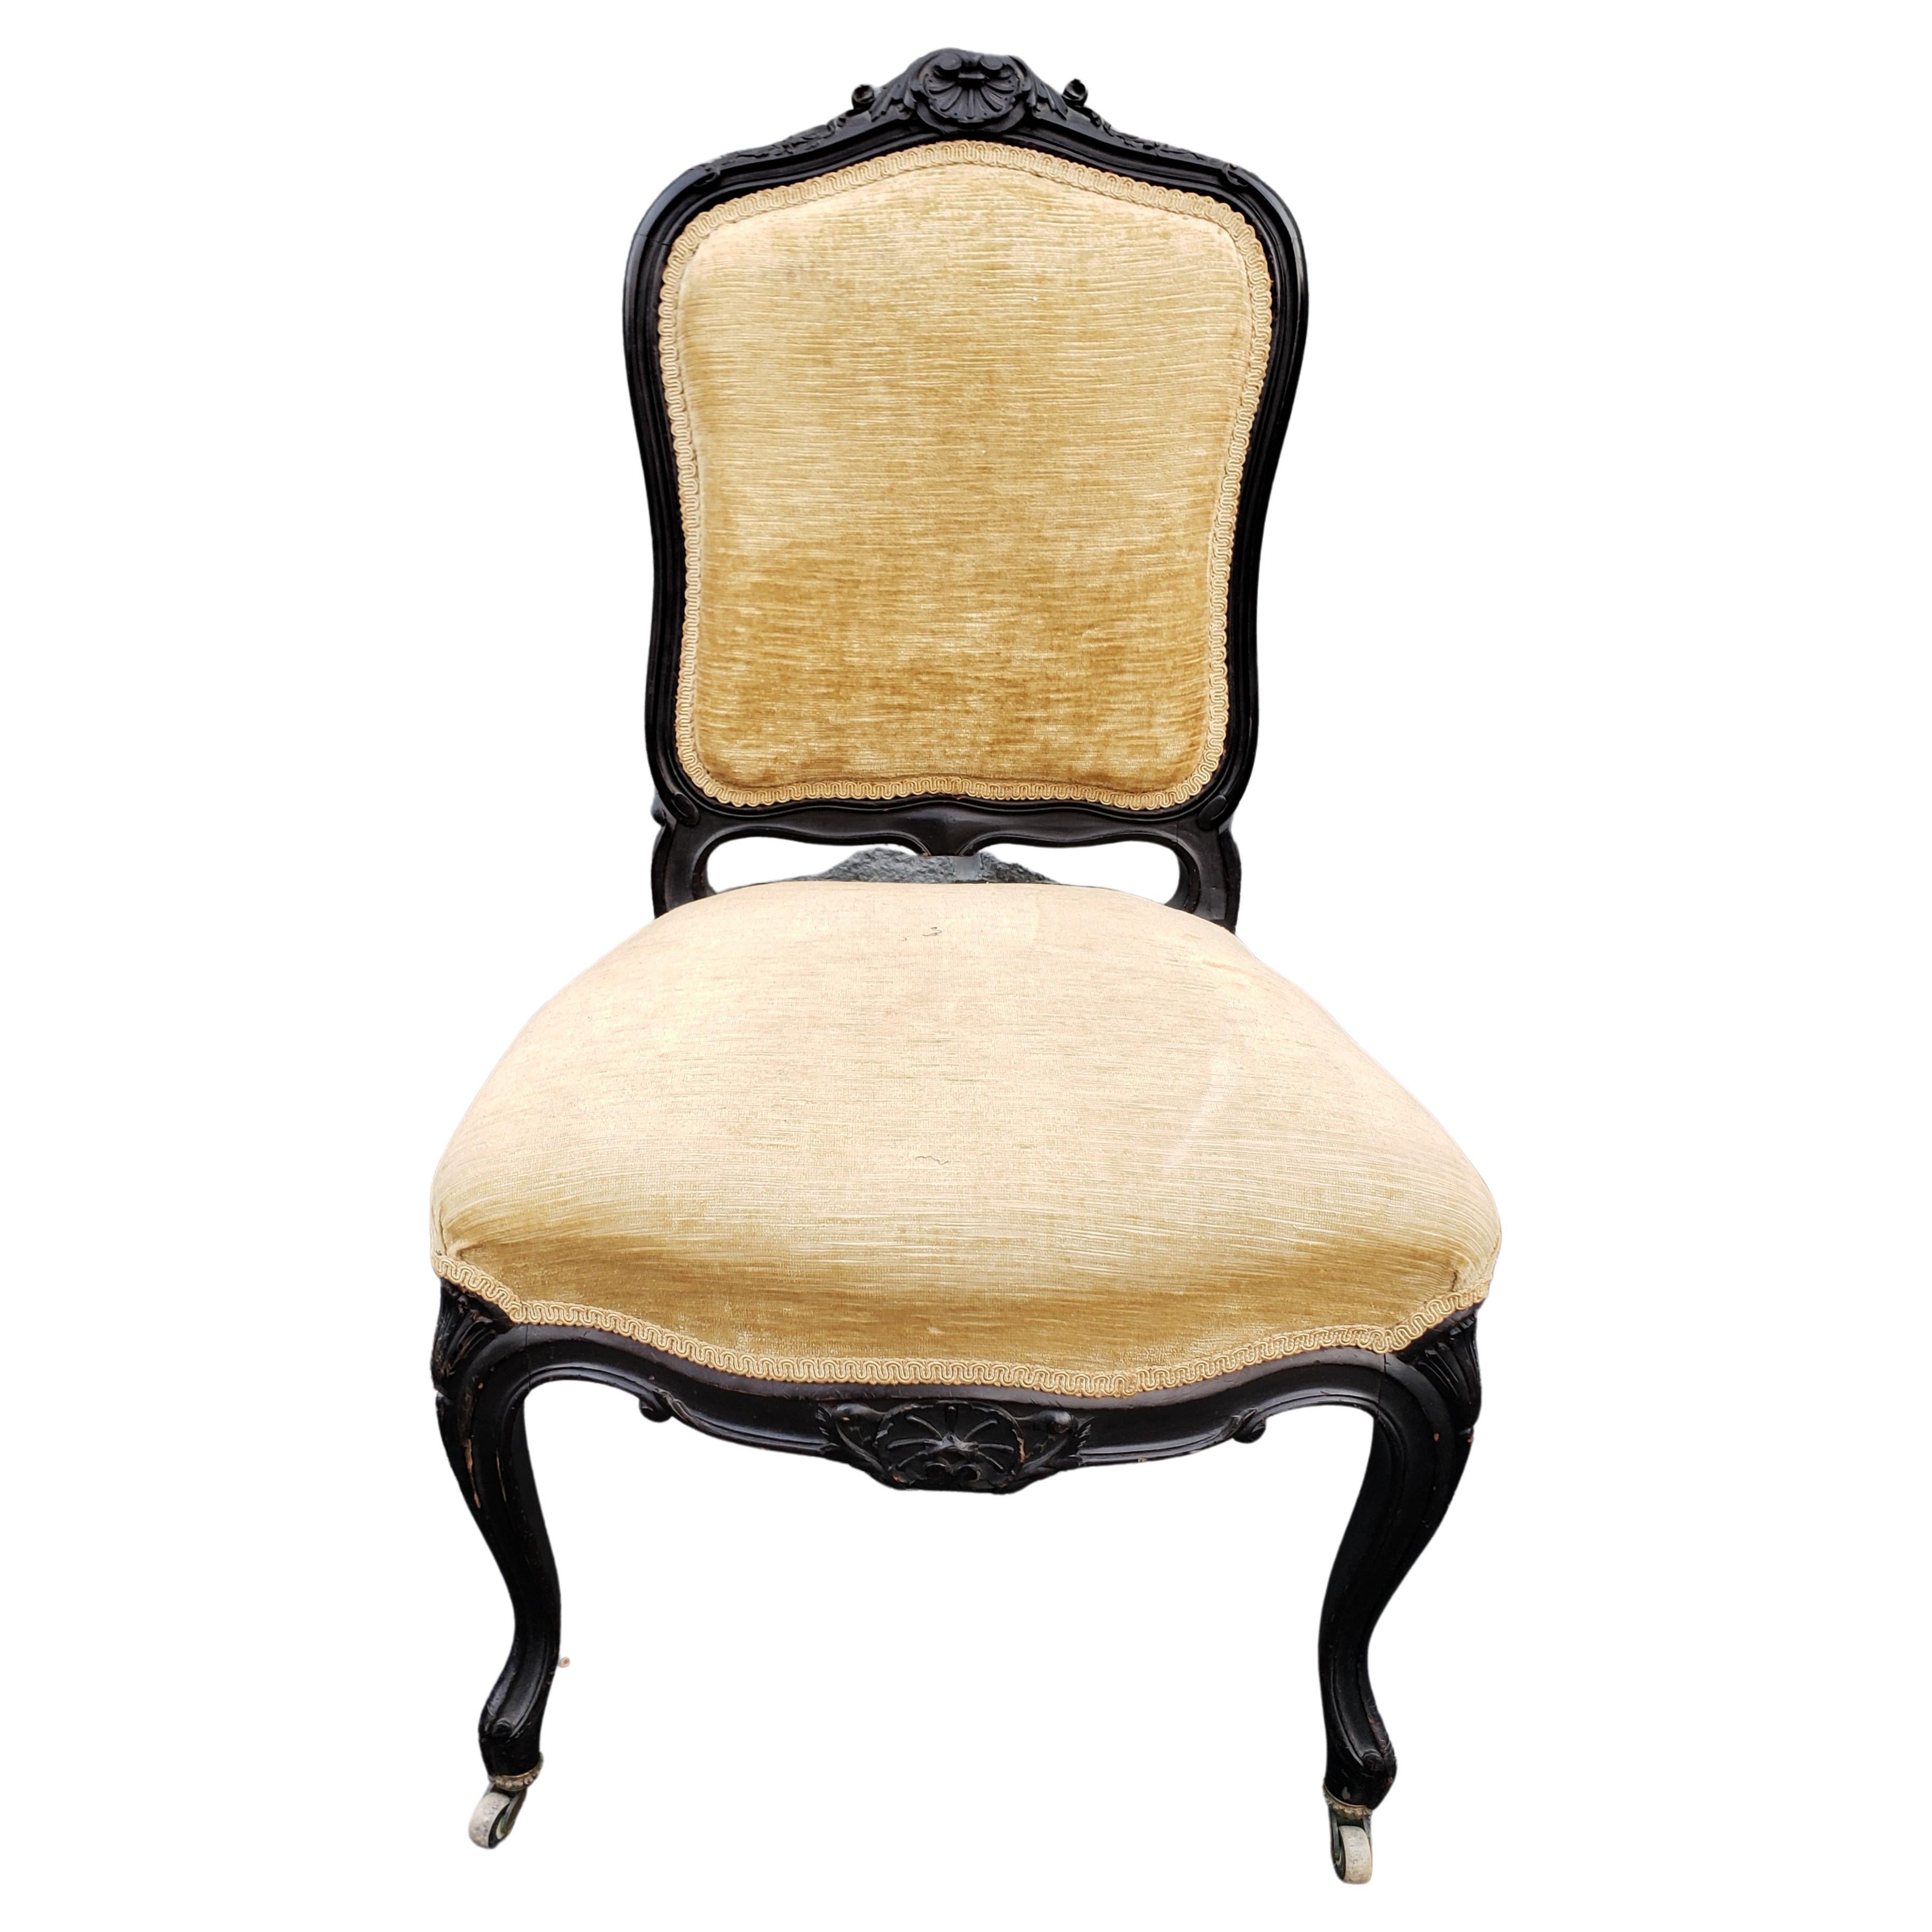 Paar von  1890 Louis XV geschnitzt, ebonisiert und gepolstert Lounge-Stühle. Hochwertige Samtpolsterung. Schön ebonisiert und geschnitzt. Maße: 21